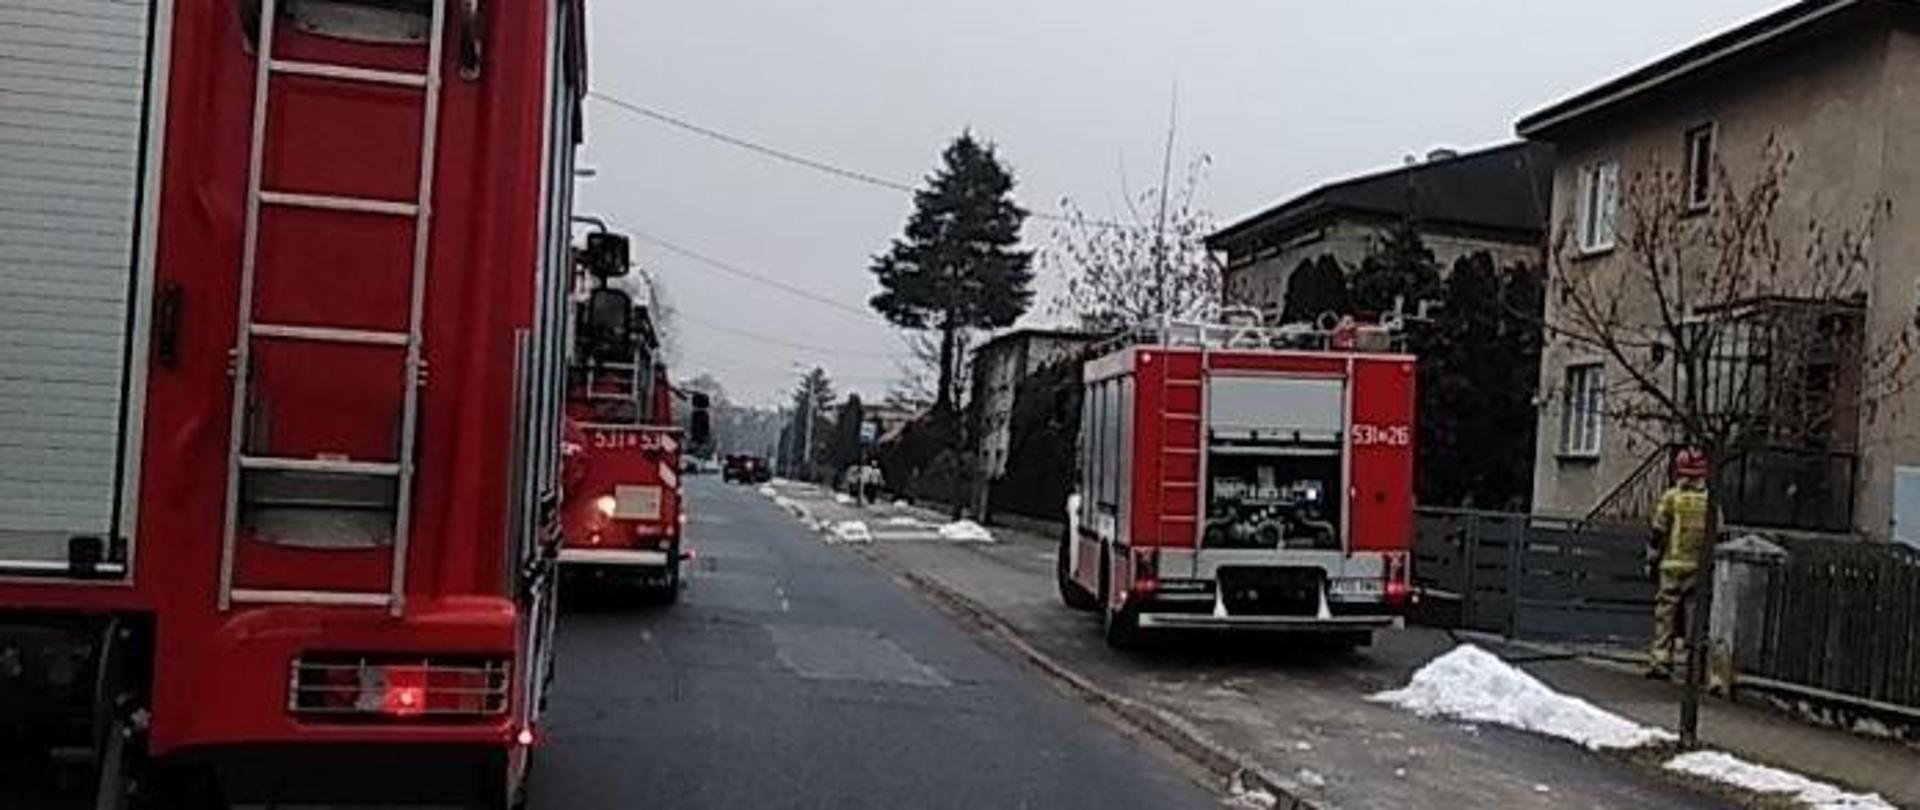 Samochody pożarnicze podczas akcji.